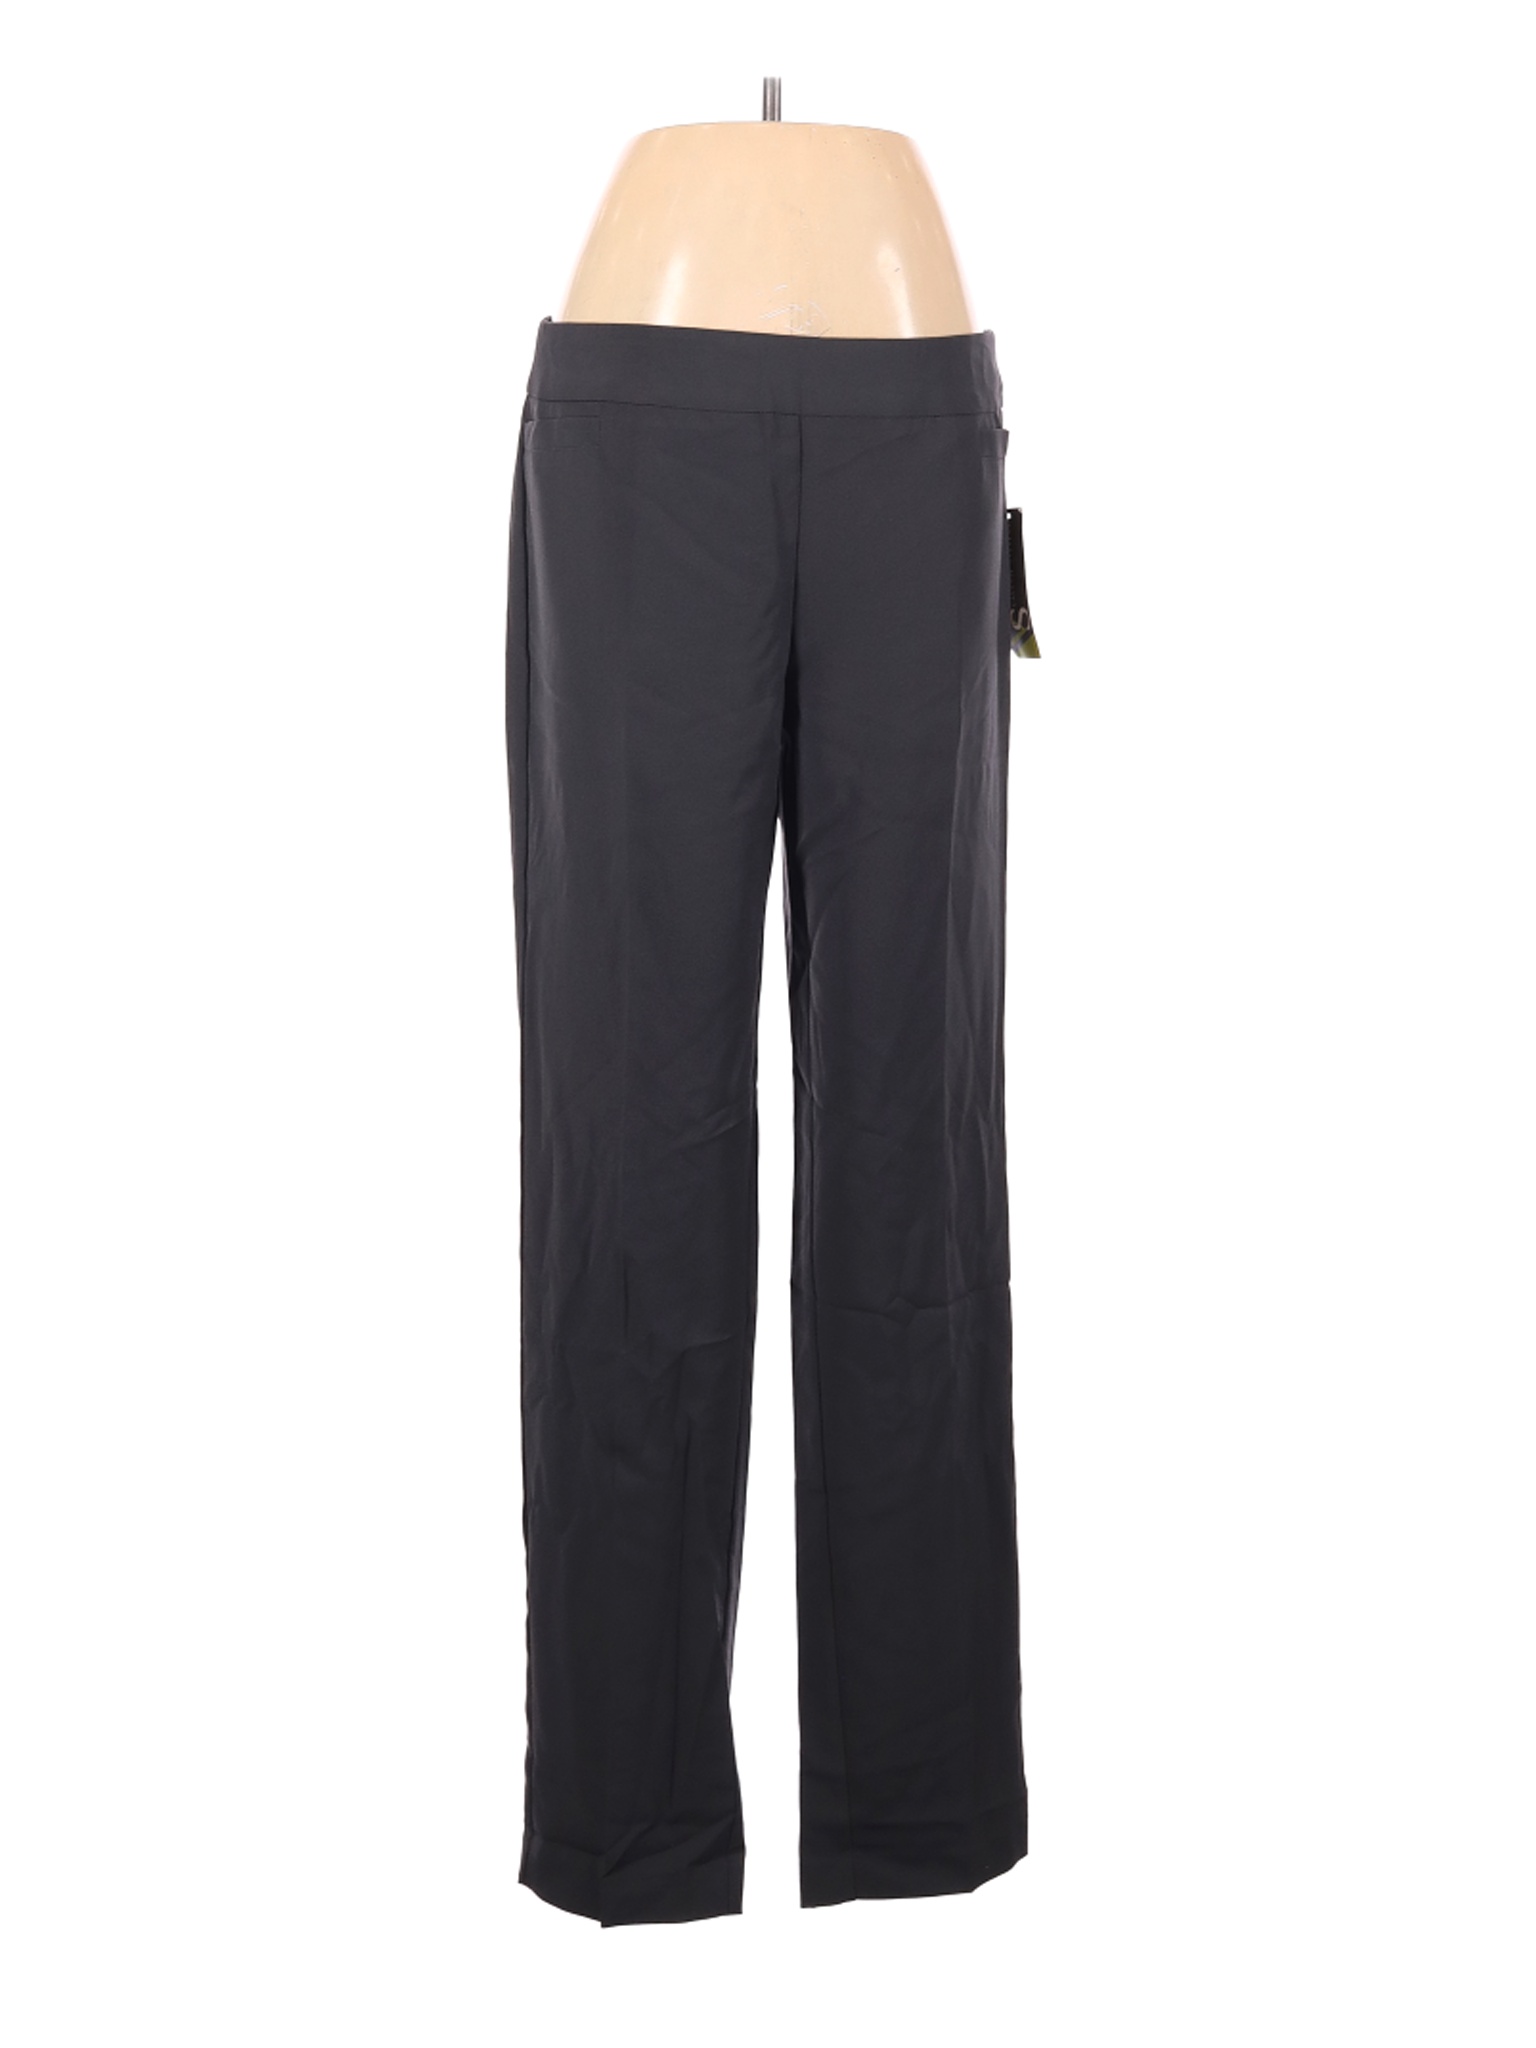 NWT Valerie Stevens Women Black Dress Pants 6 | eBay